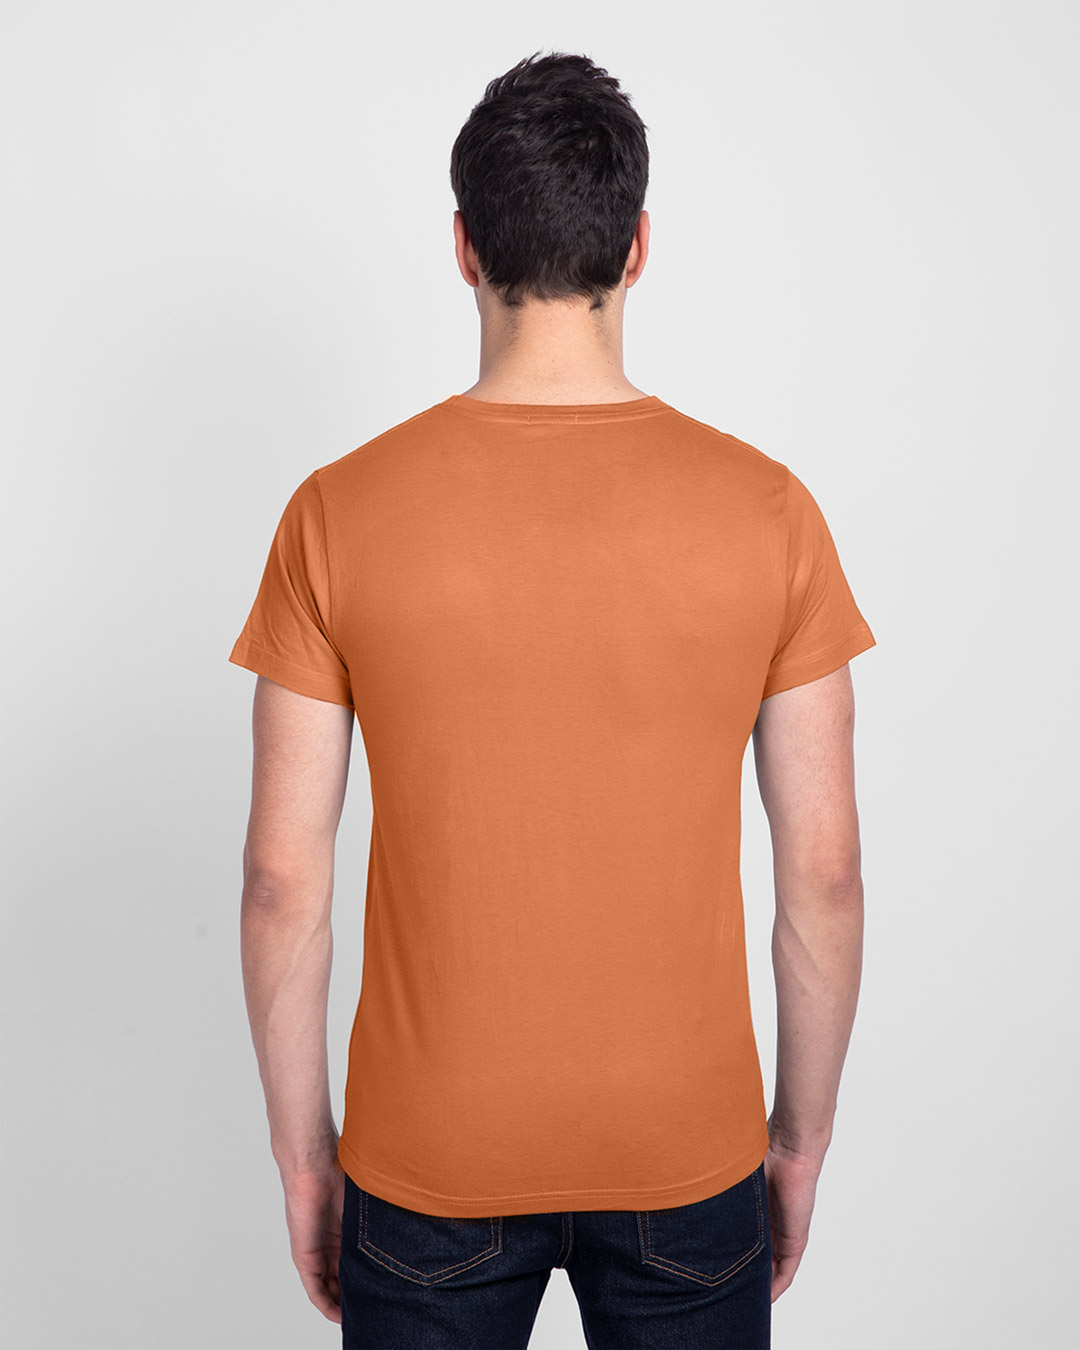 Shop Sadda Pain Half Sleeve T-Shirt Vintage Orange-Back